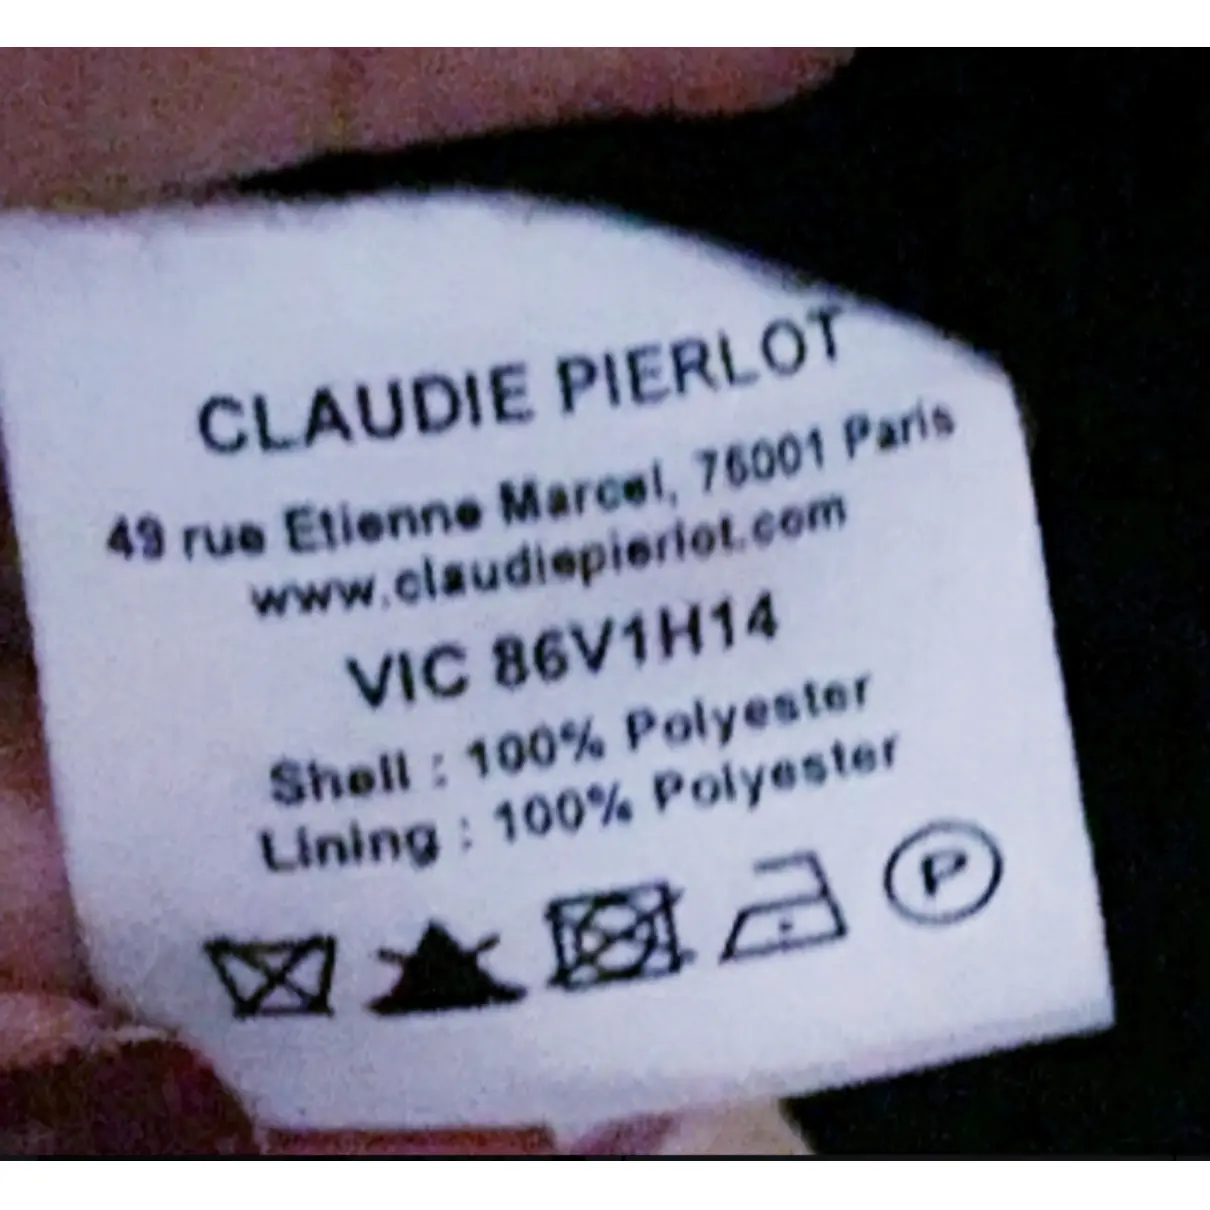 Buy Claudie Pierlot Jacket online